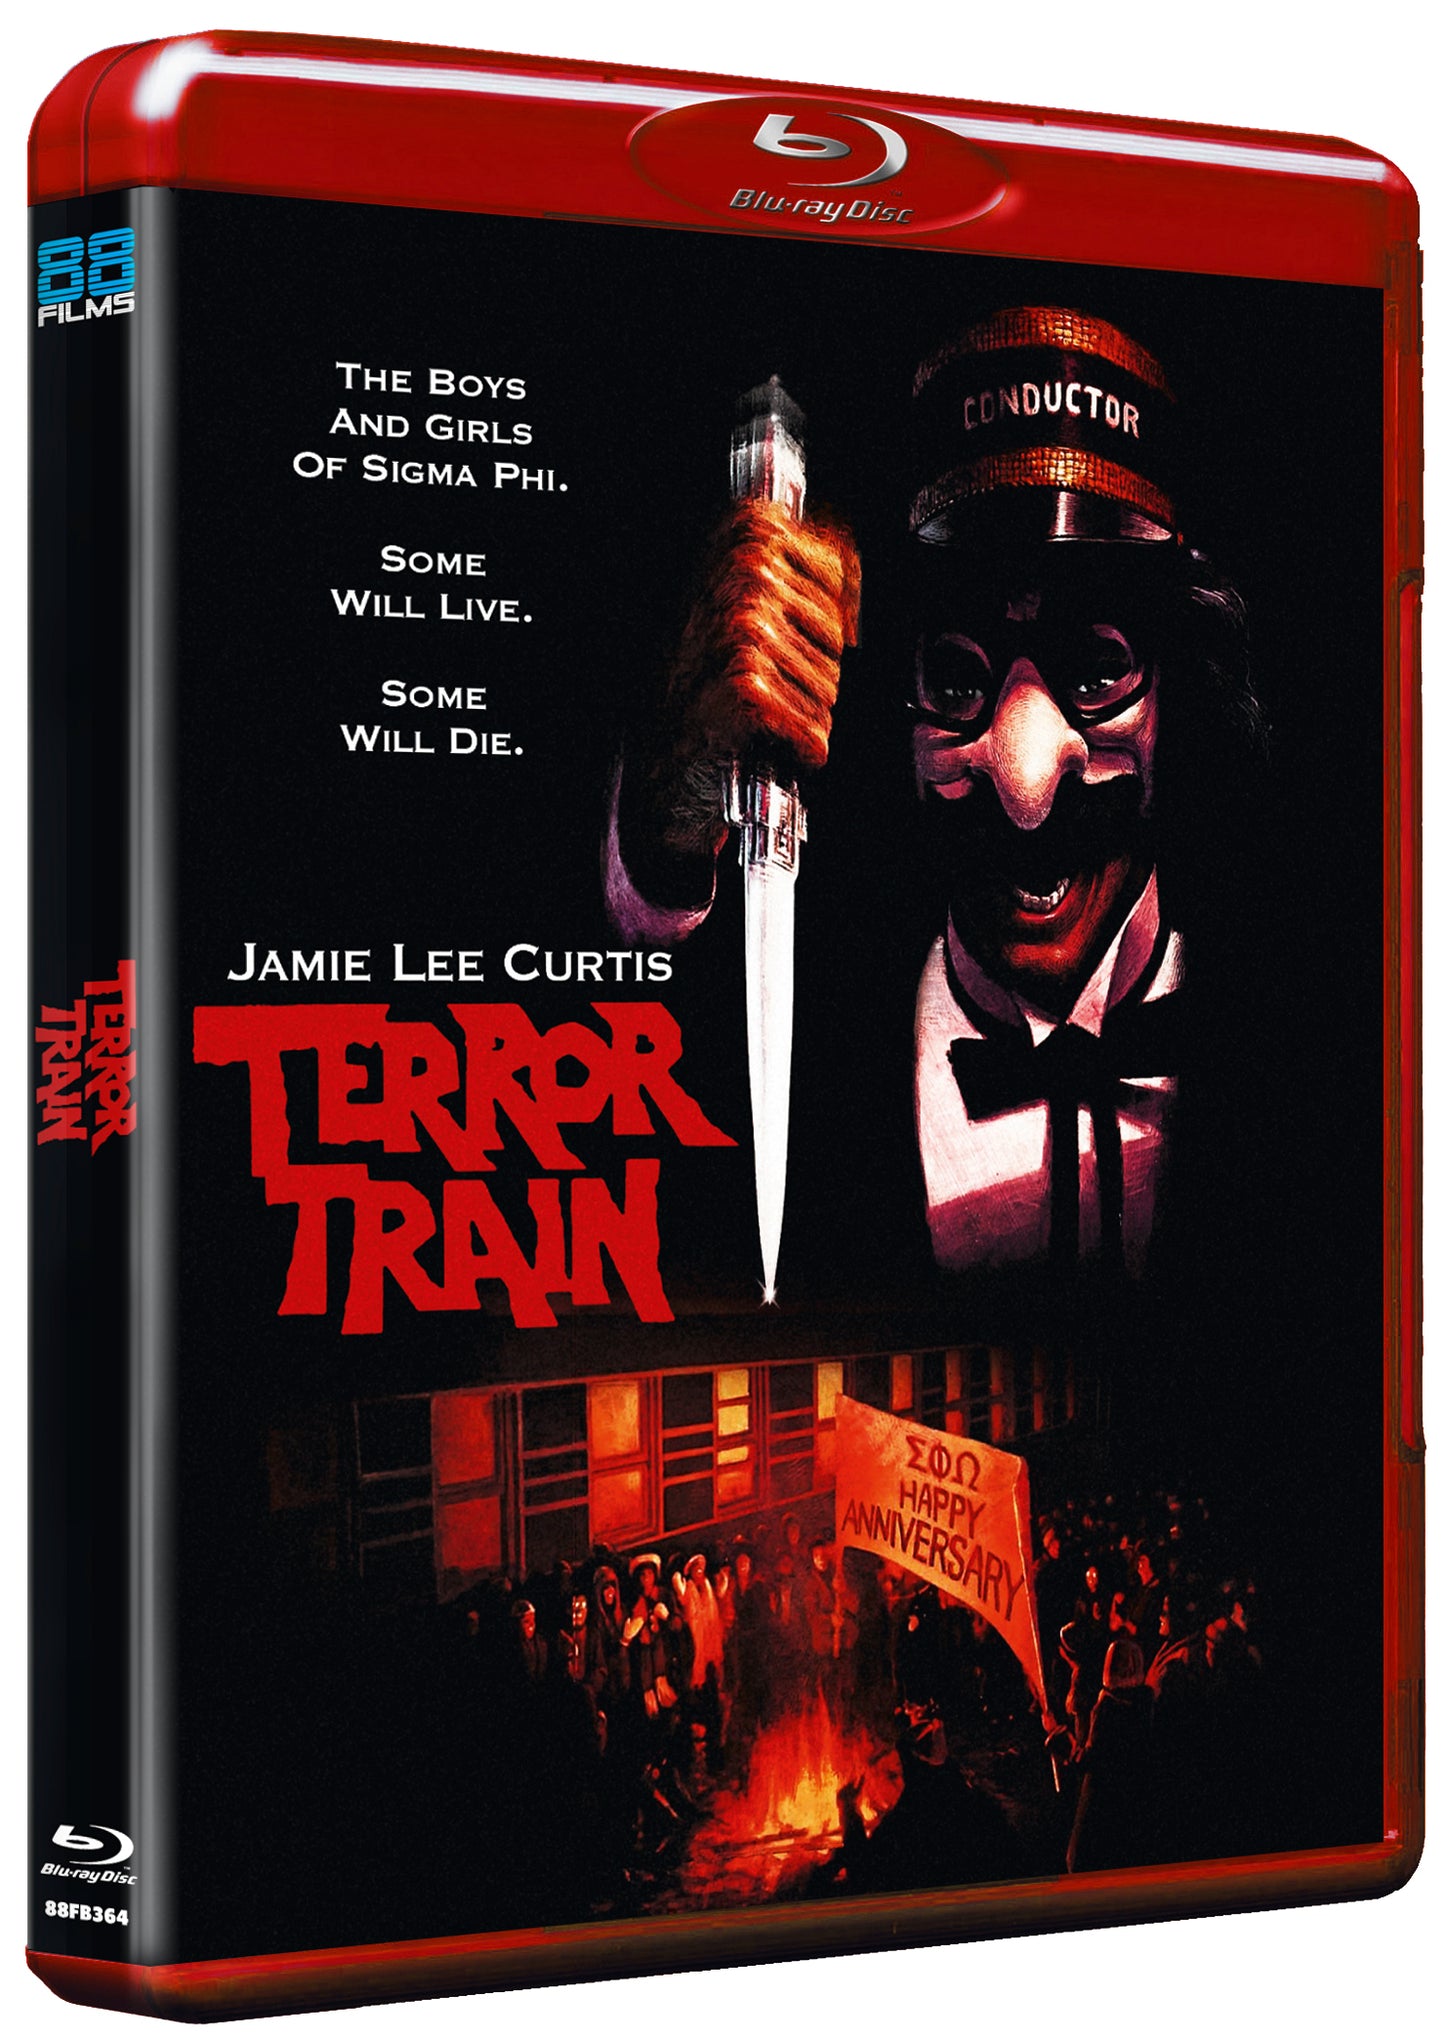 Terror Train - Slasher Classics Collection 41